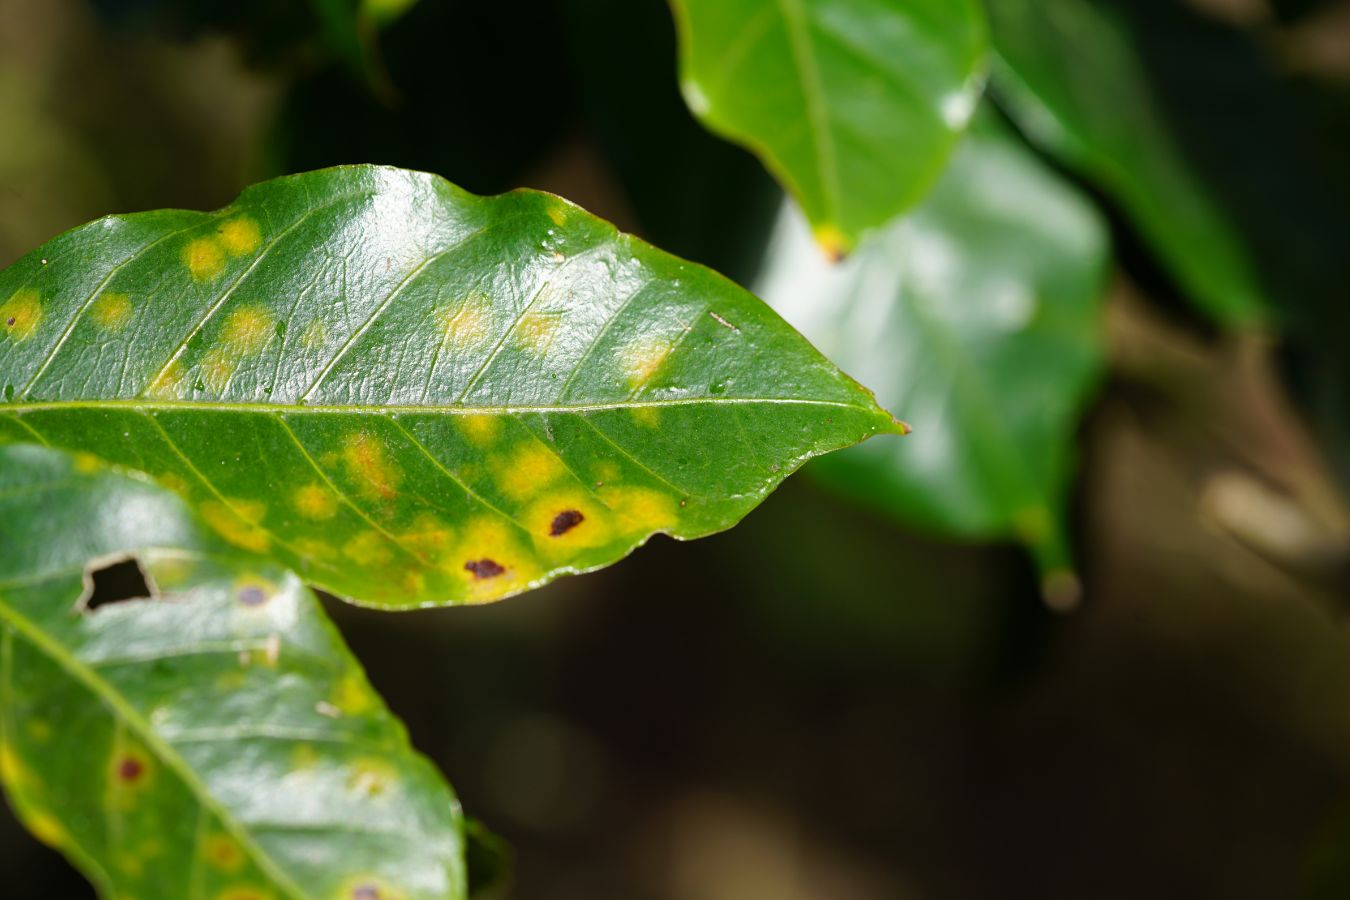 Hemileia Vastatrix – Coffee Rust Disease